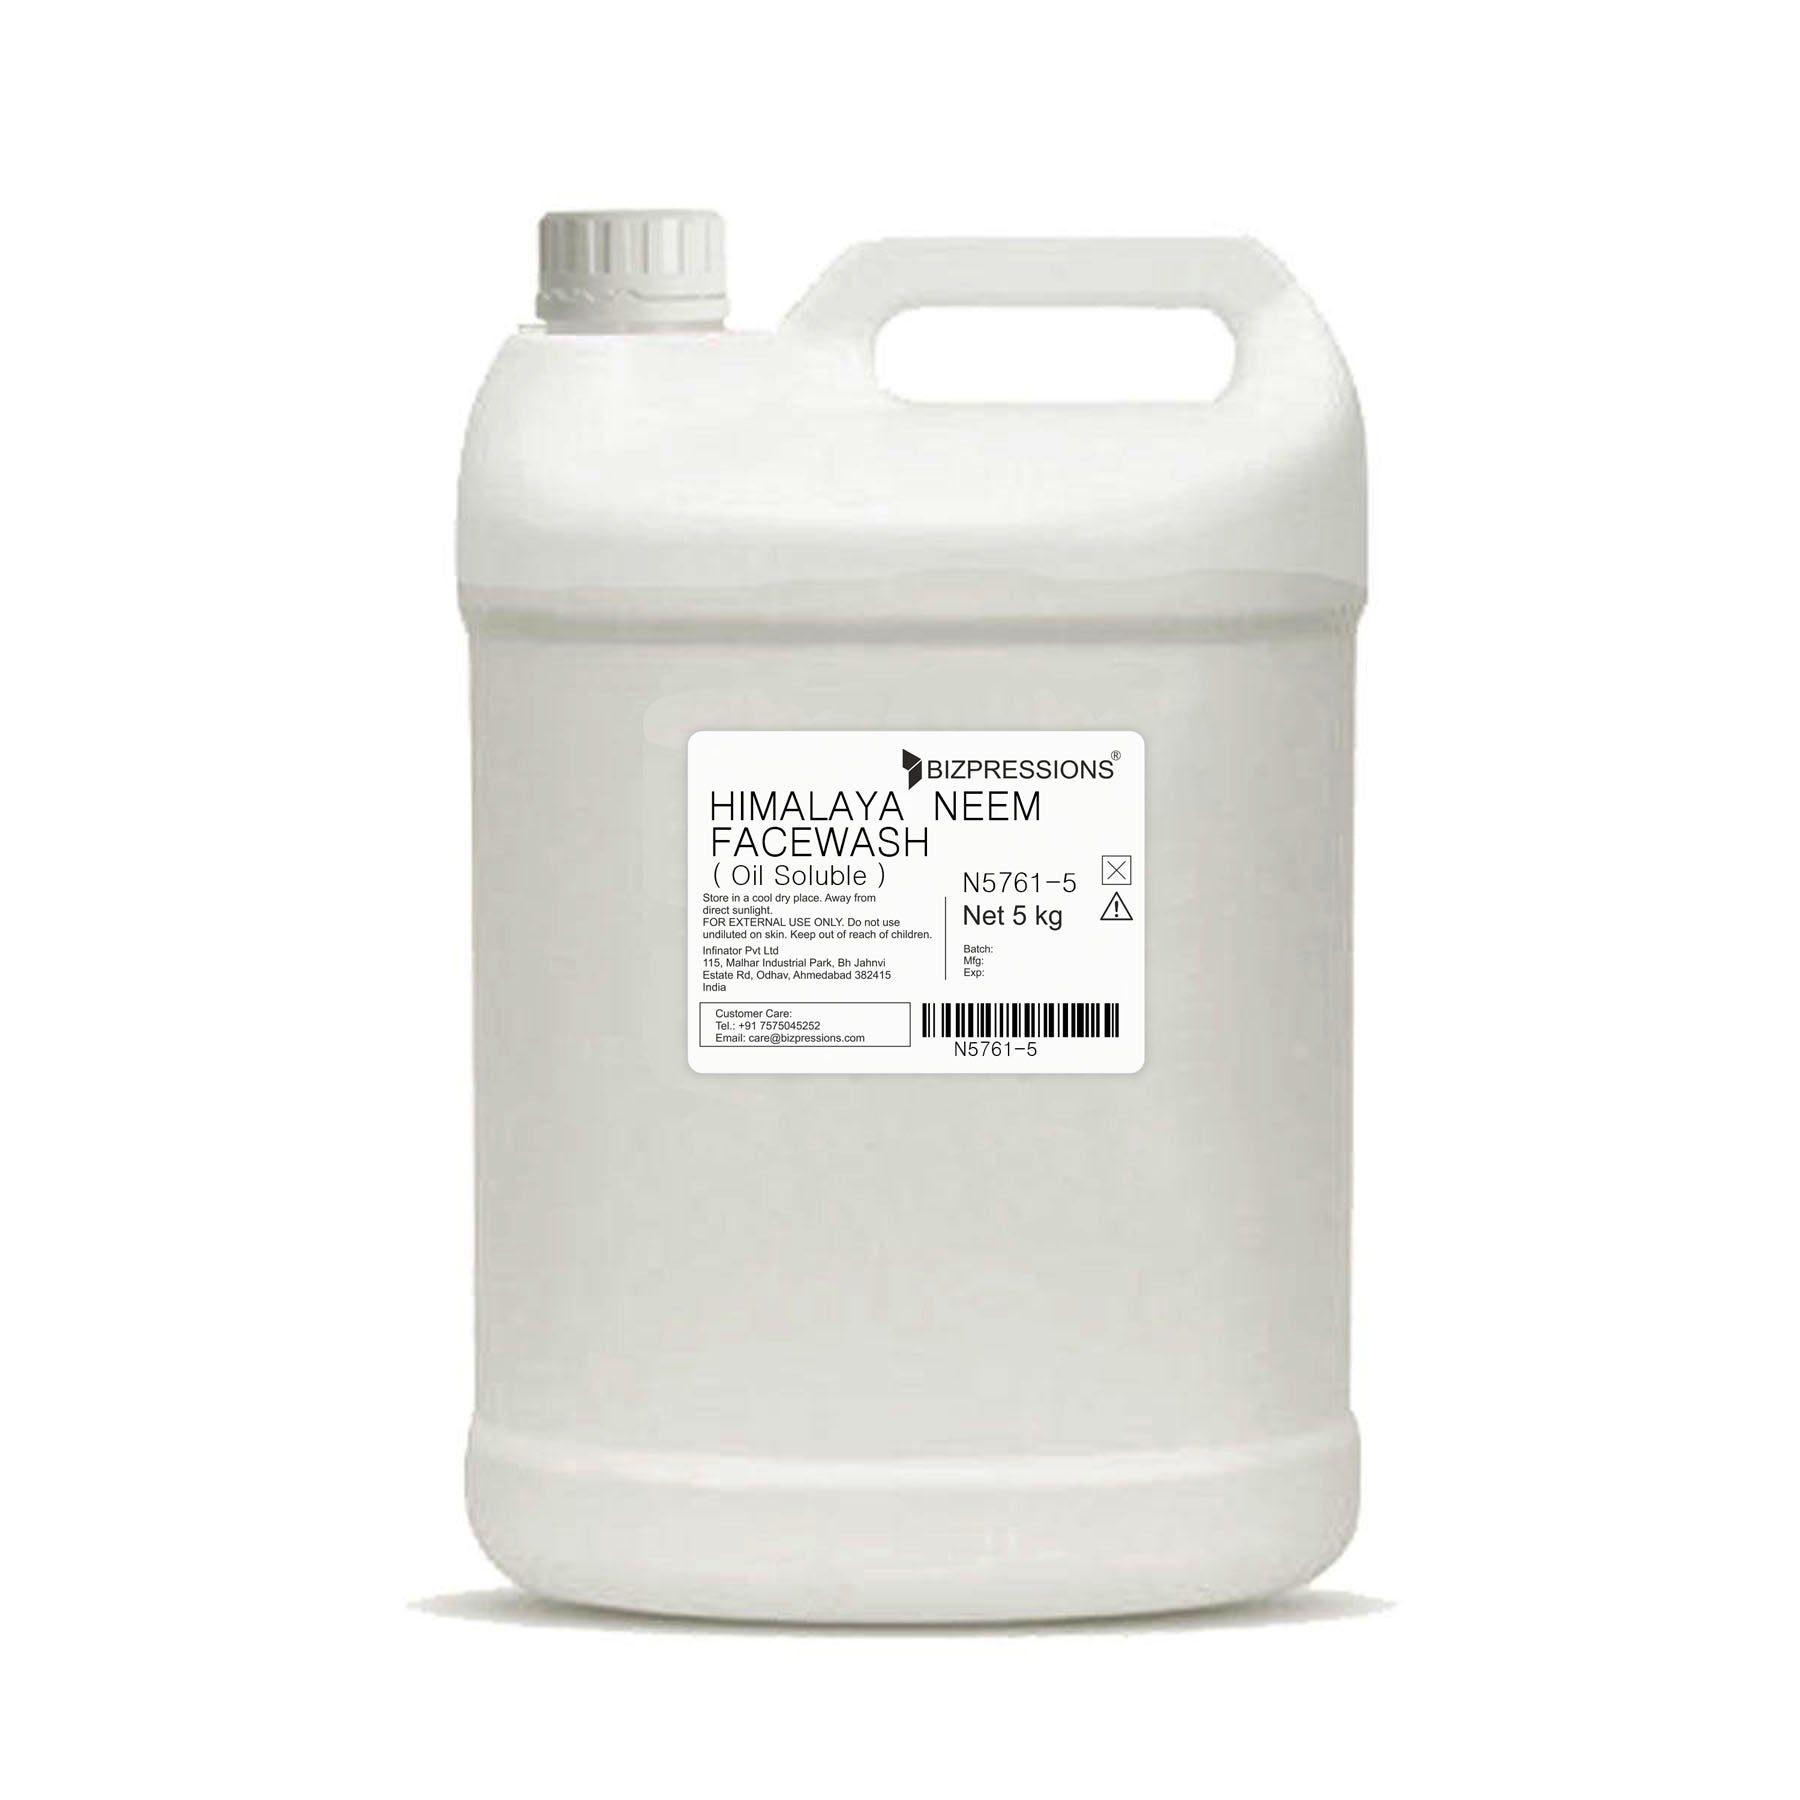 HIMALAYA NEEM FACEWASH - Fragrance ( Oil Soluble ) - 5 kg